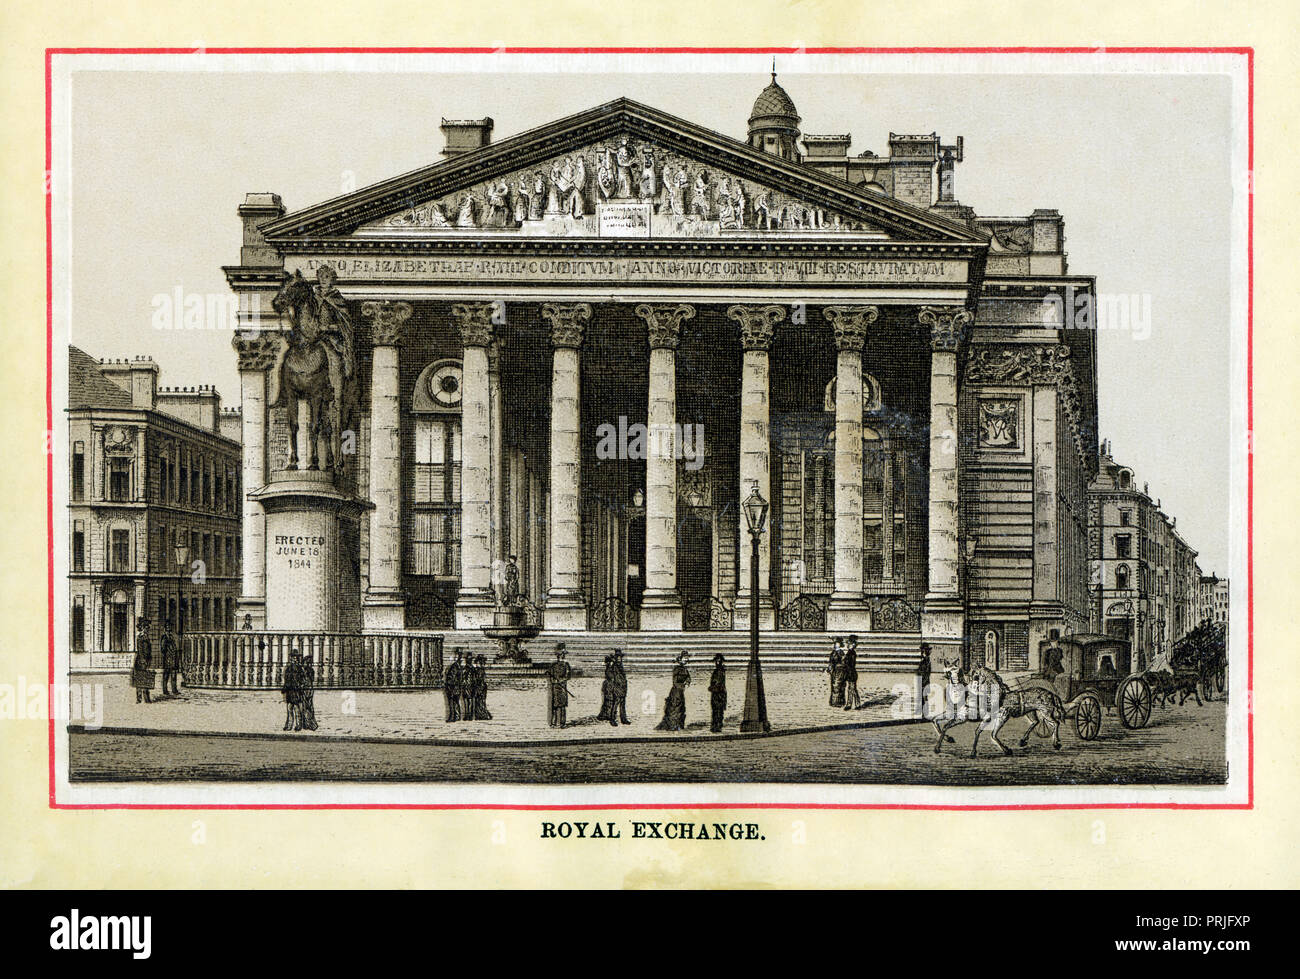 Le Royal Exchange, 1883 gravure sur acier de haute qualité de l'édifice, ouvert en 1844, qui abritait le marché de l'assurance Lloyds et d'autres commerçants dans le centre de la ville face à la Banque d'Angleterre avec une statue du duc de Wellington en face Banque D'Images